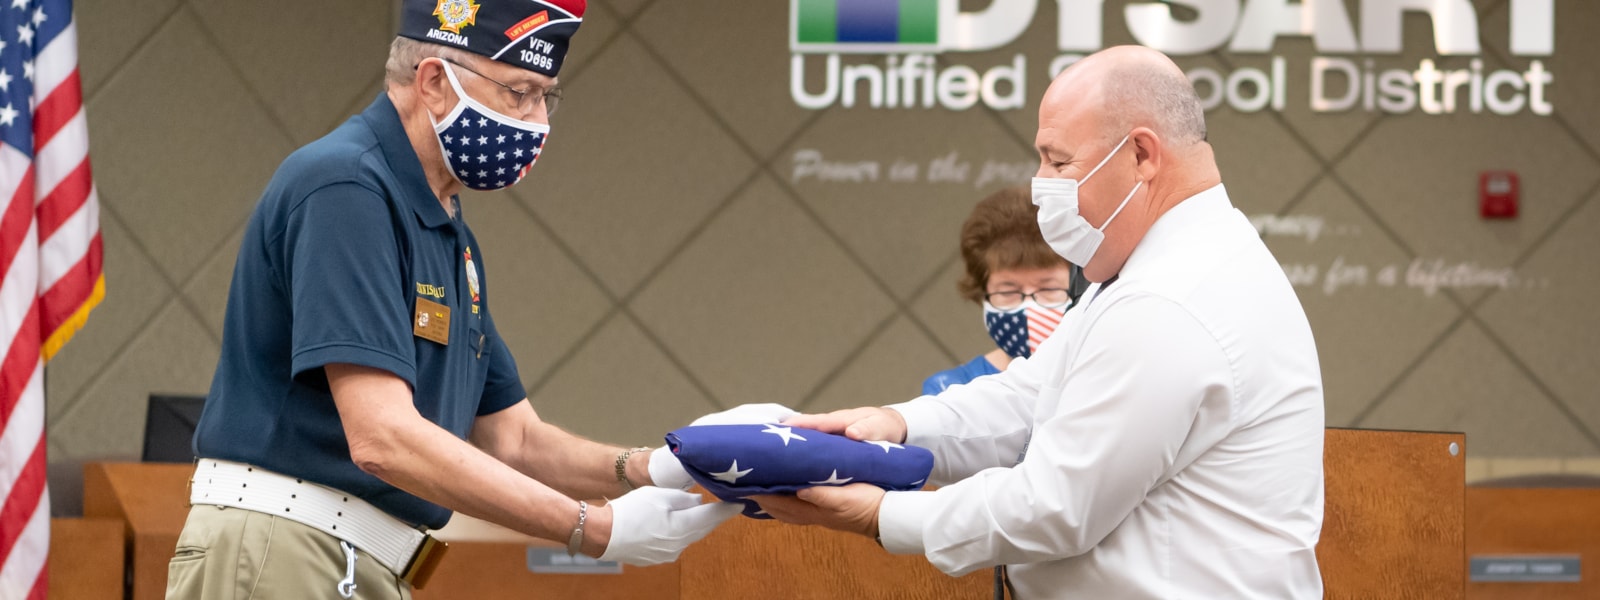 Dennis Grau from the VFW presents a flag to Jim Dean.